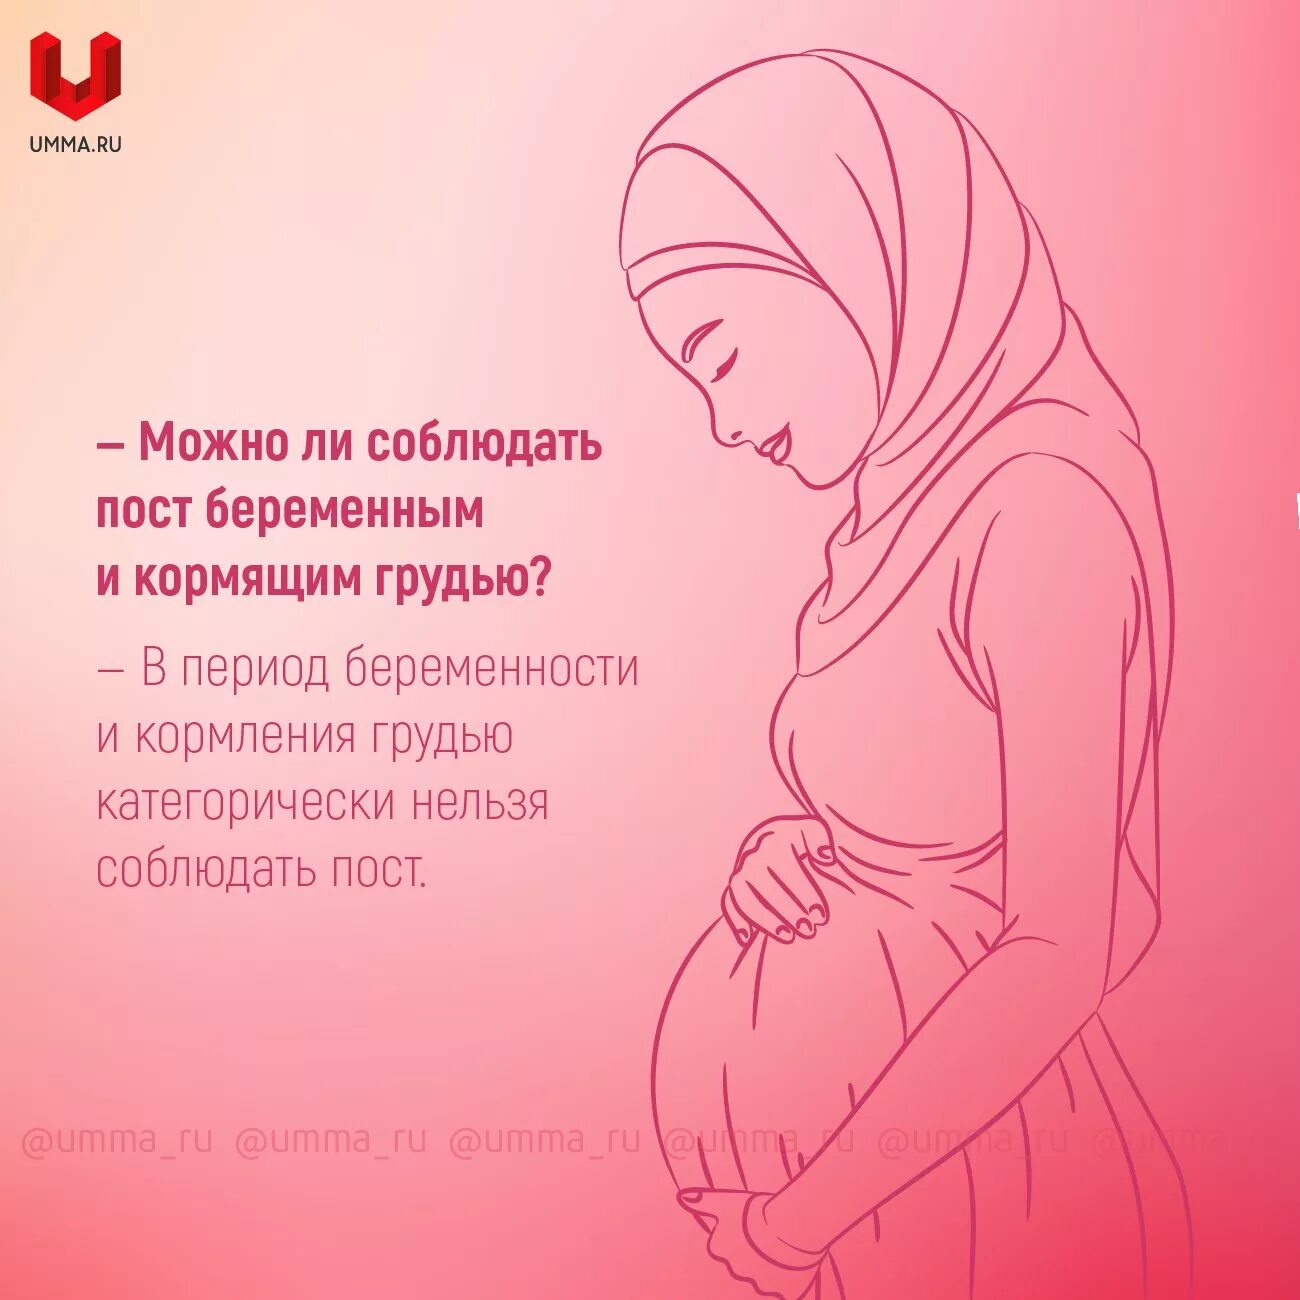 Беременным можно держать уразу. Про беременных женщин в Исламе. Дуа для кормления грудью. Хадисы про беременных.